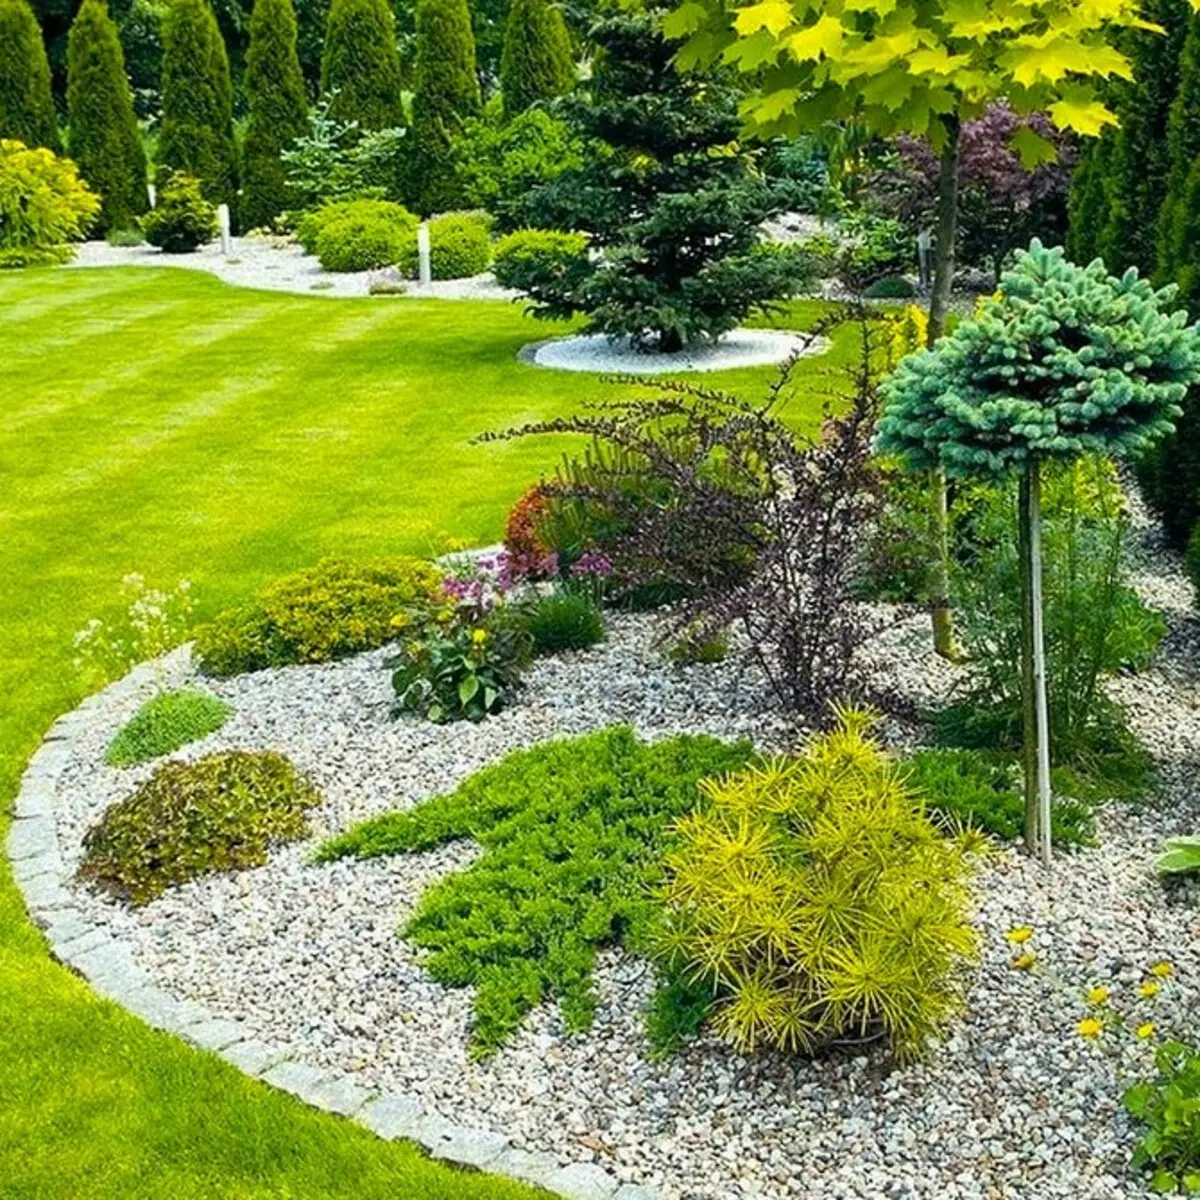 不適切な地域で美しい庭園を手配する方法：4つの問題の単純な解決策 3215_11